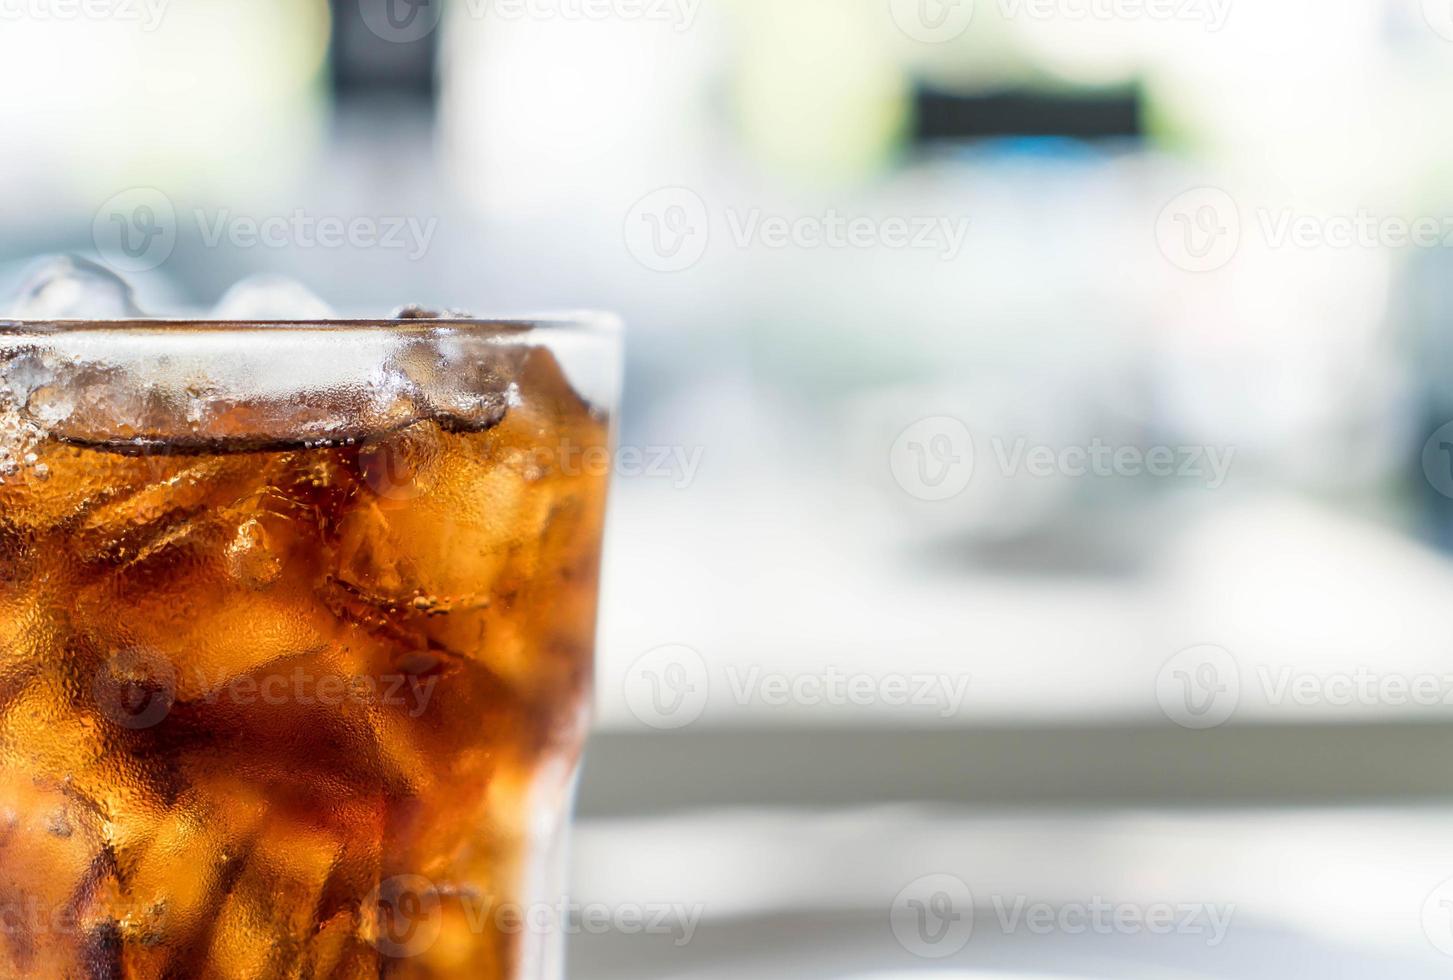 verre de cola glacé sur la table photo